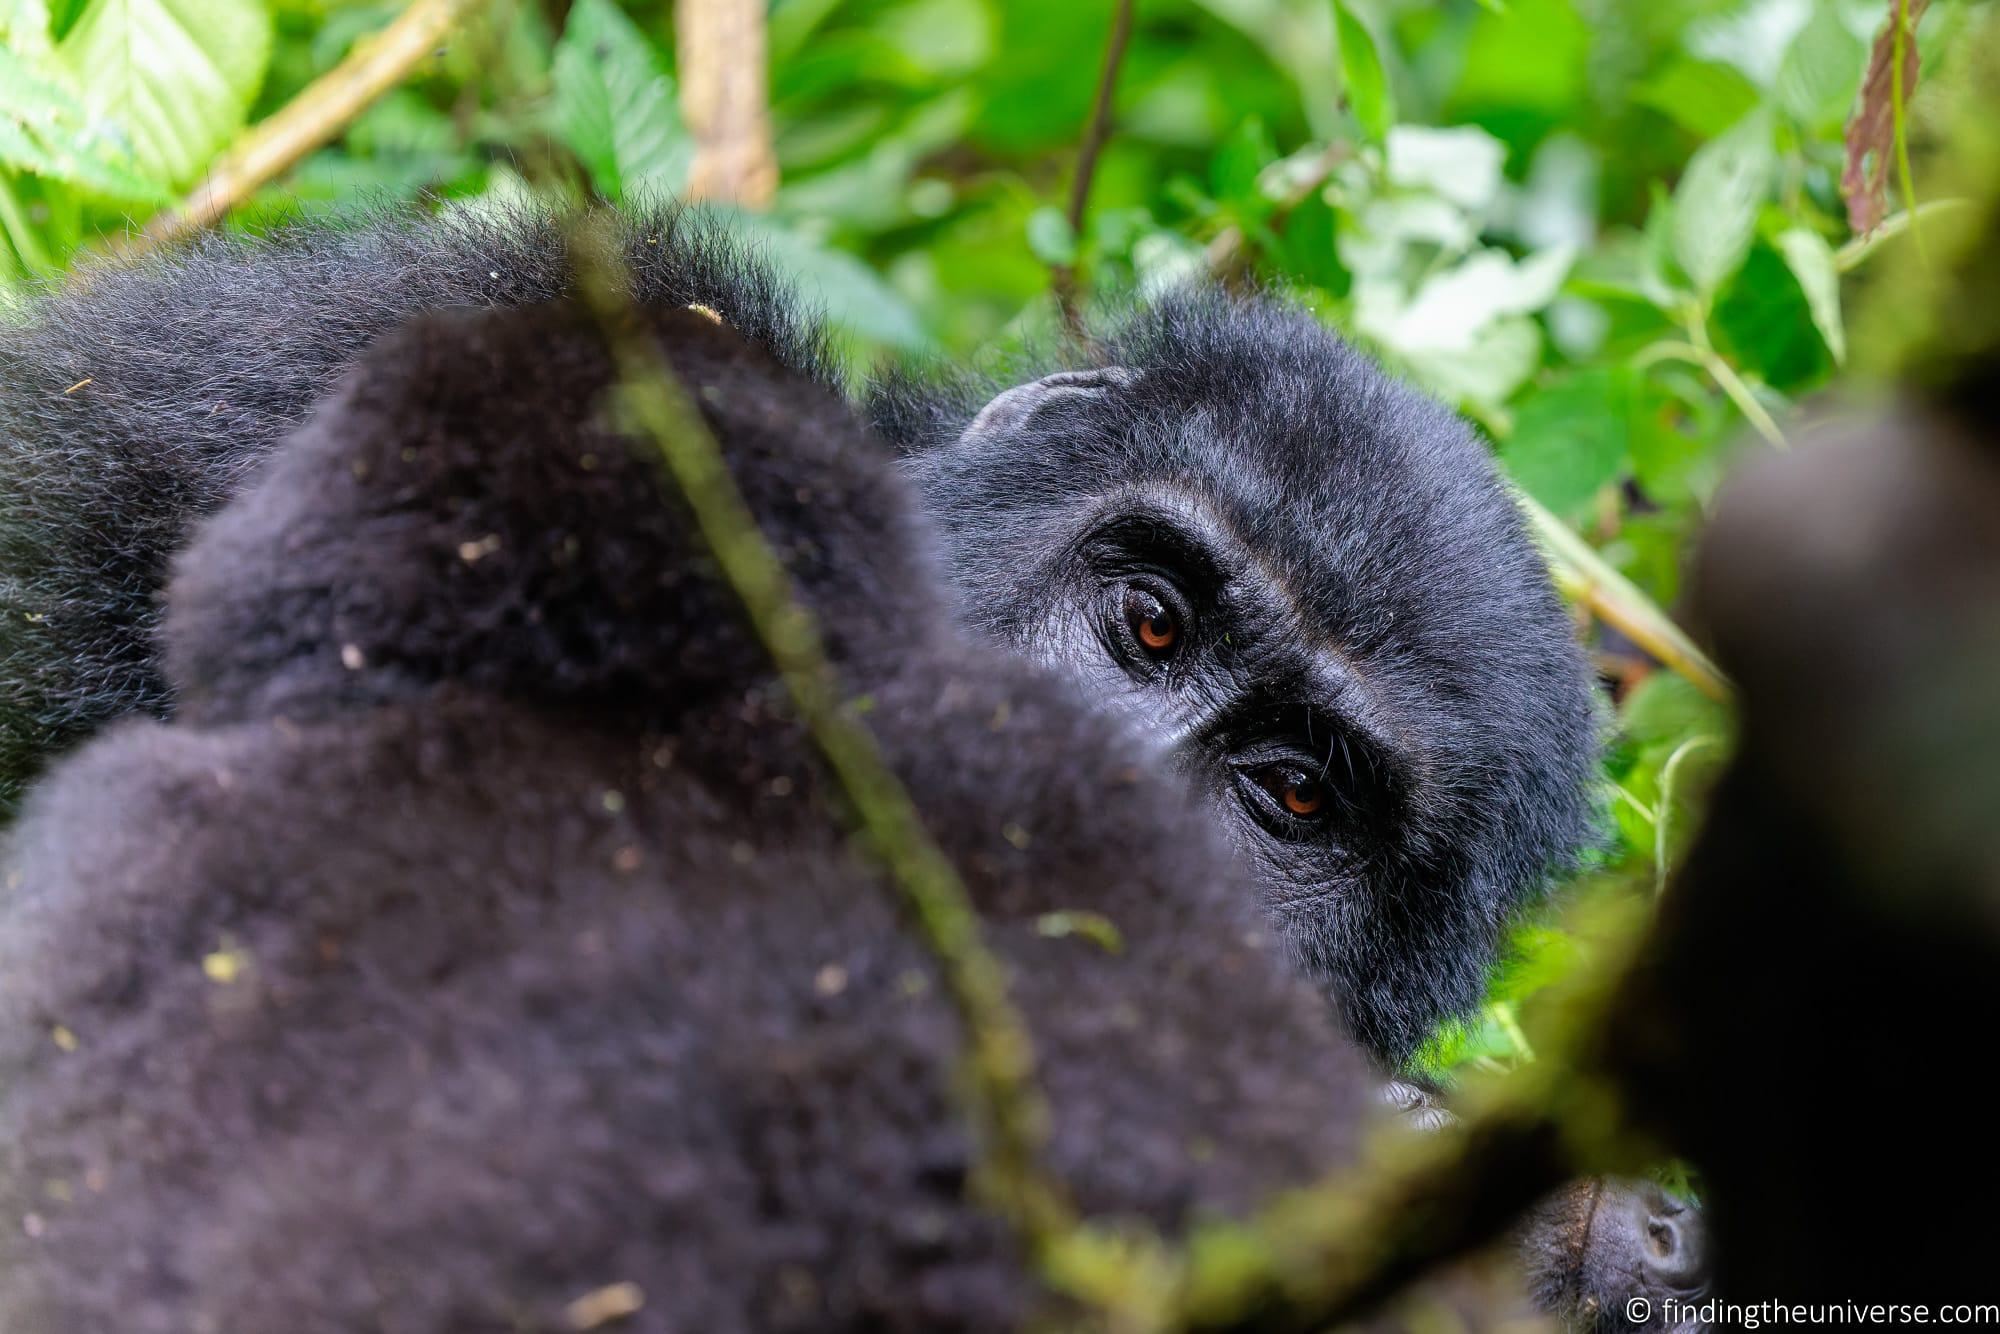 Gorilla Trekking in Uganda